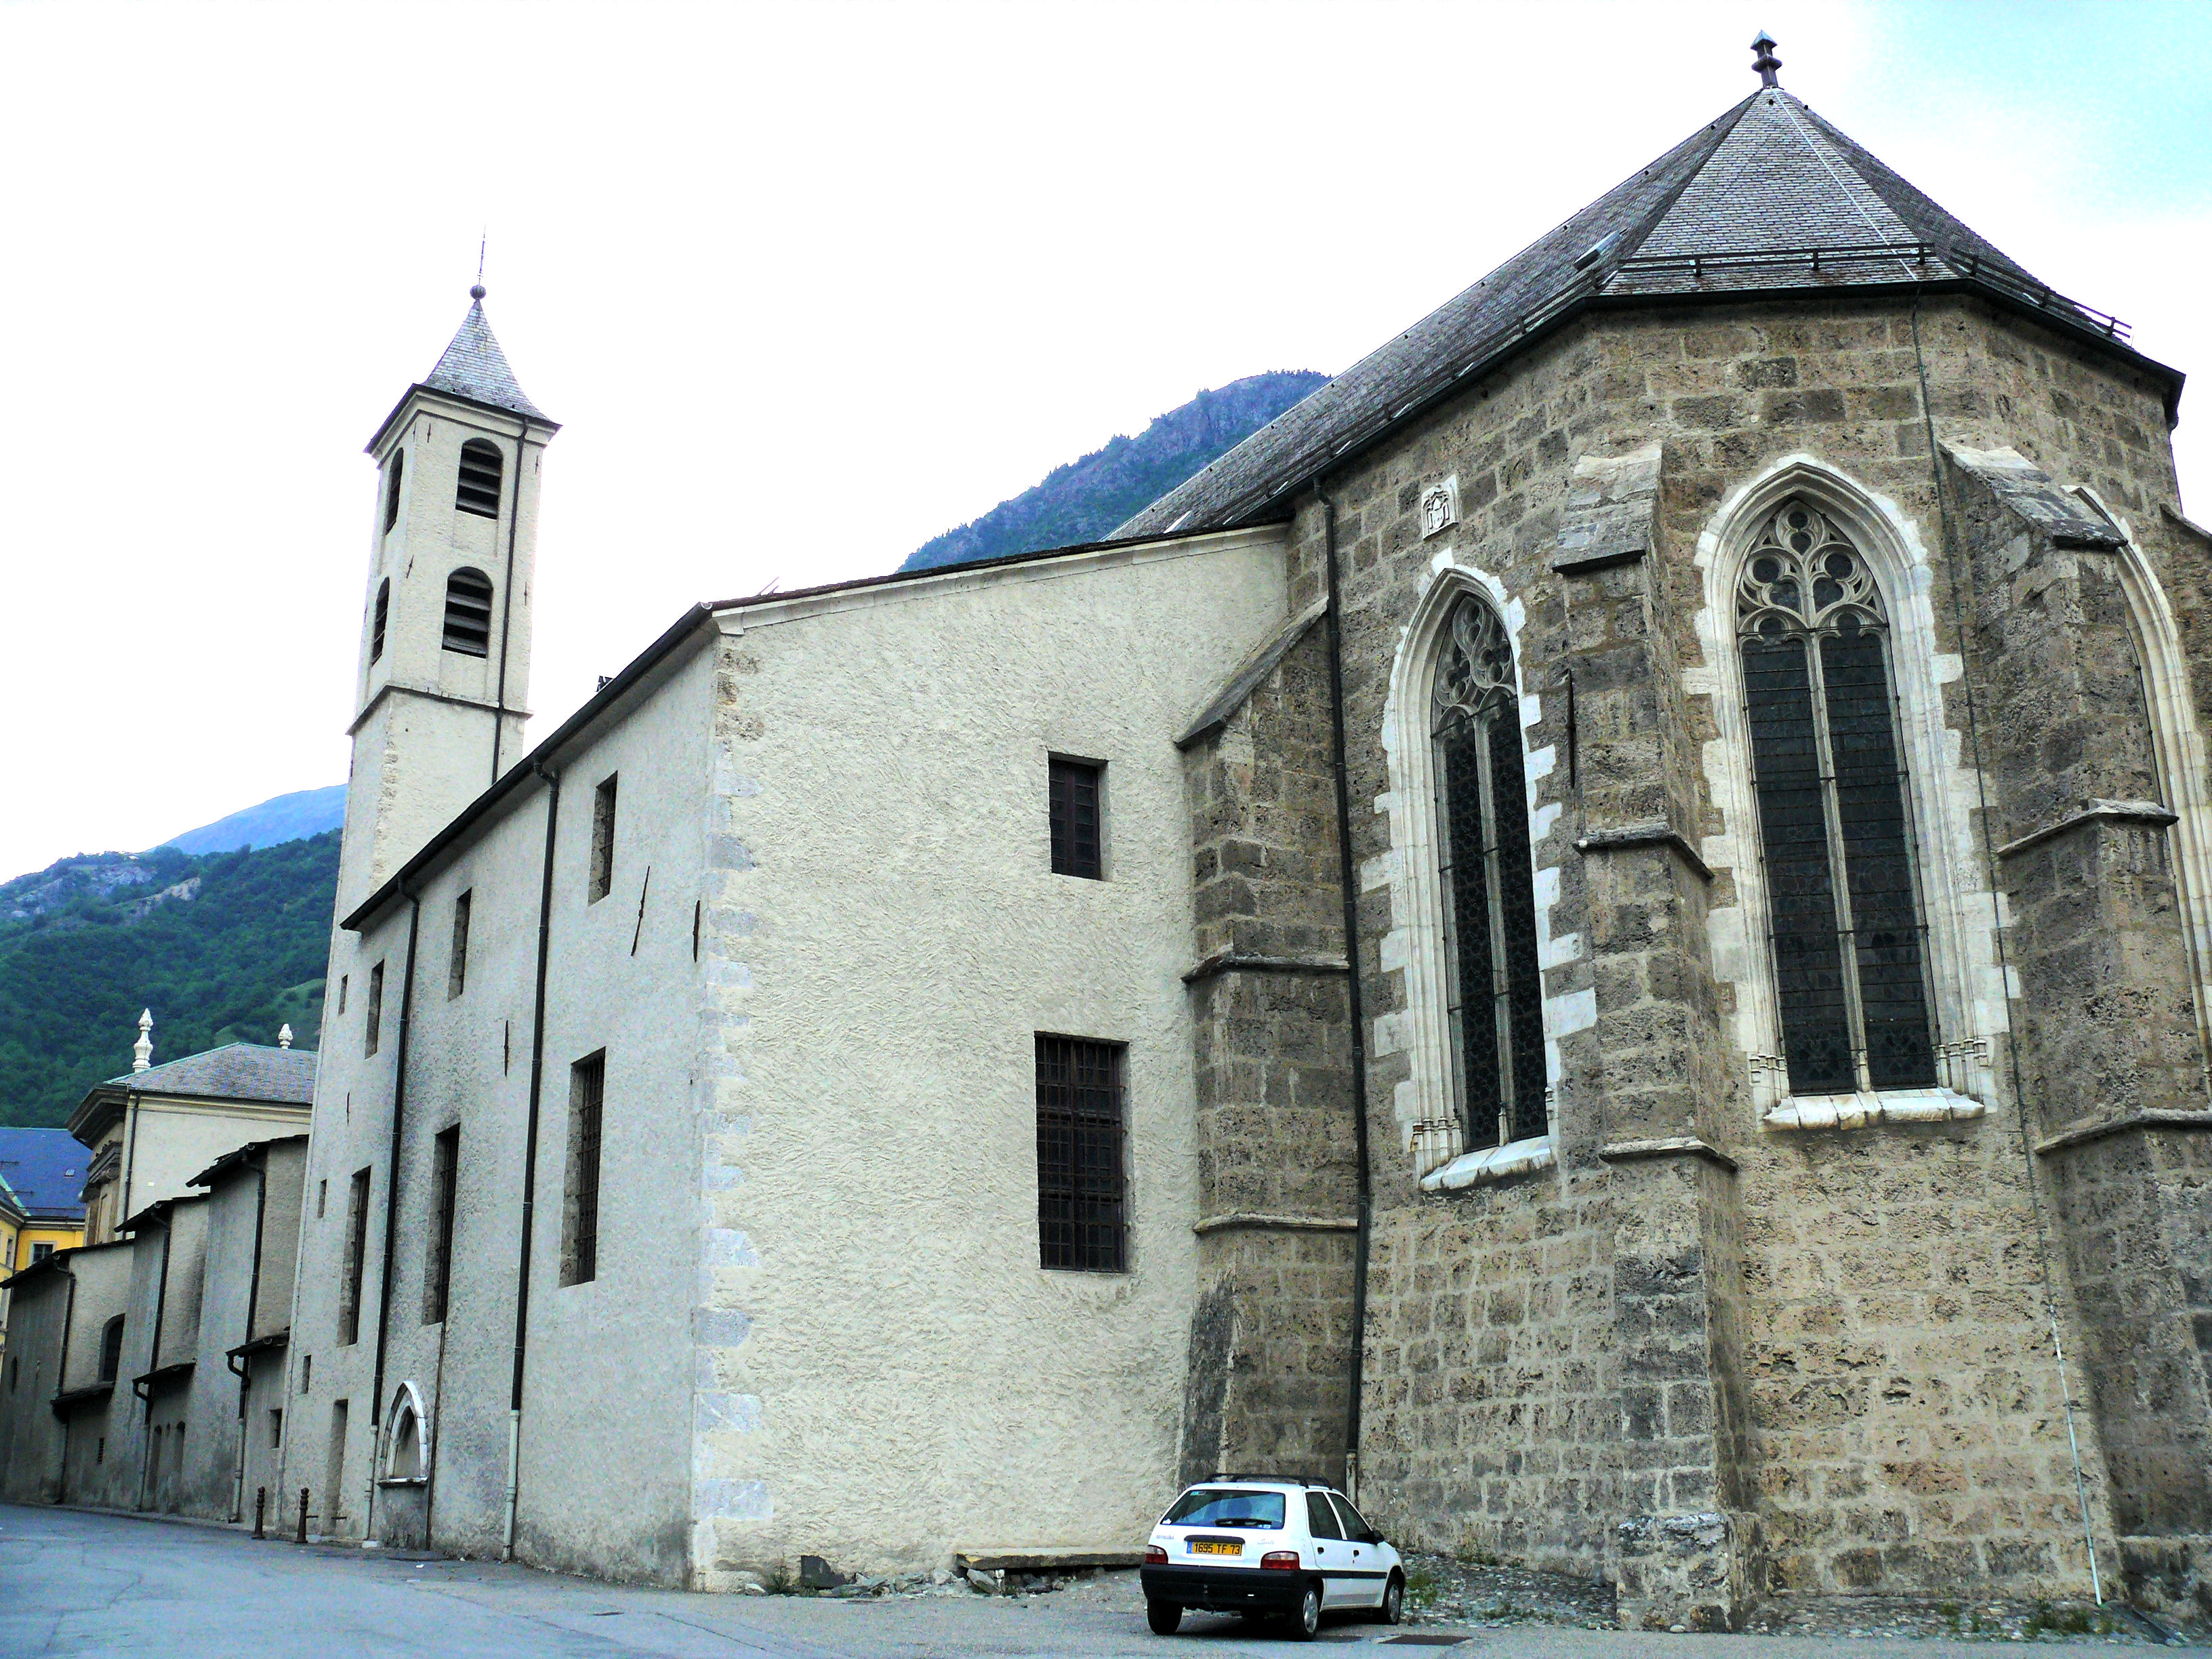 Saint-Jean-de-Maurienne - Wikipedia